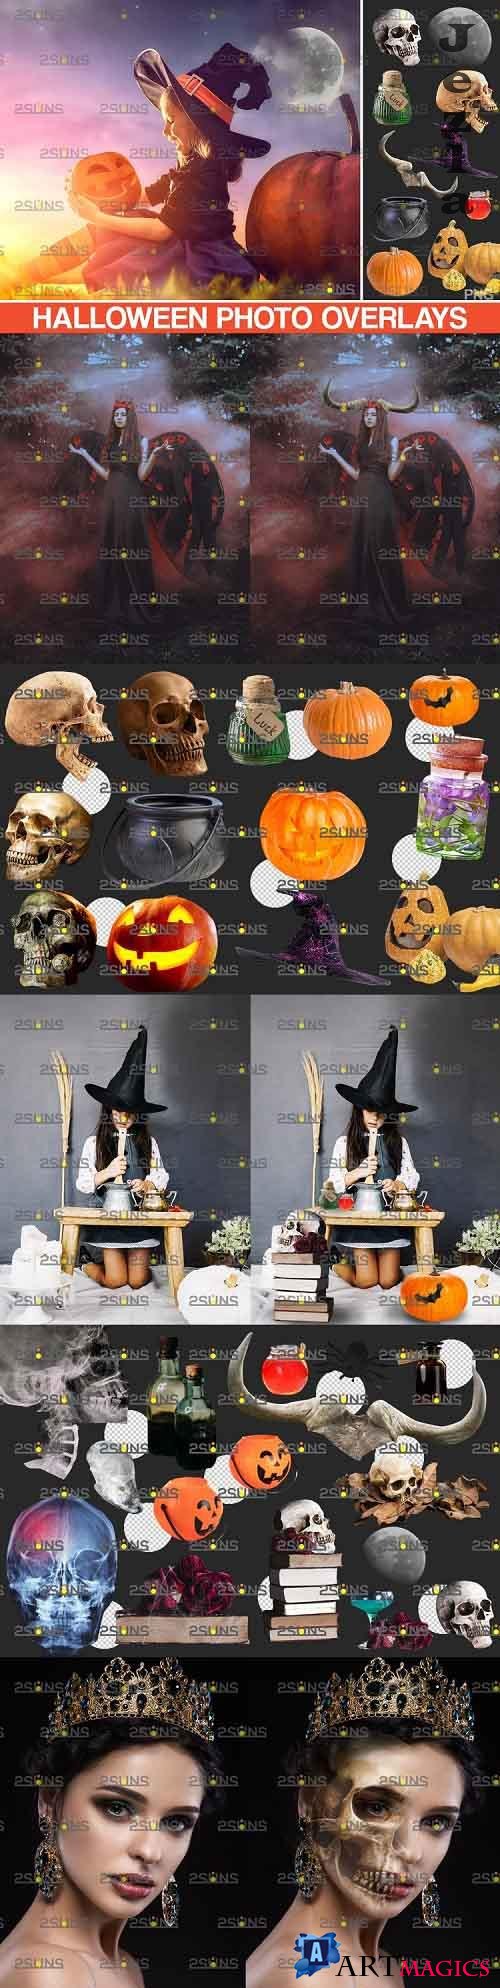 Halloween clipart & Photoshop overlay Halloween overlay - 801237